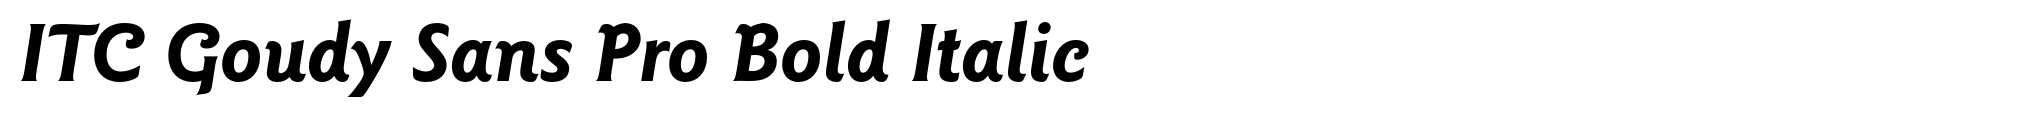 ITC Goudy Sans Pro Bold Italic image